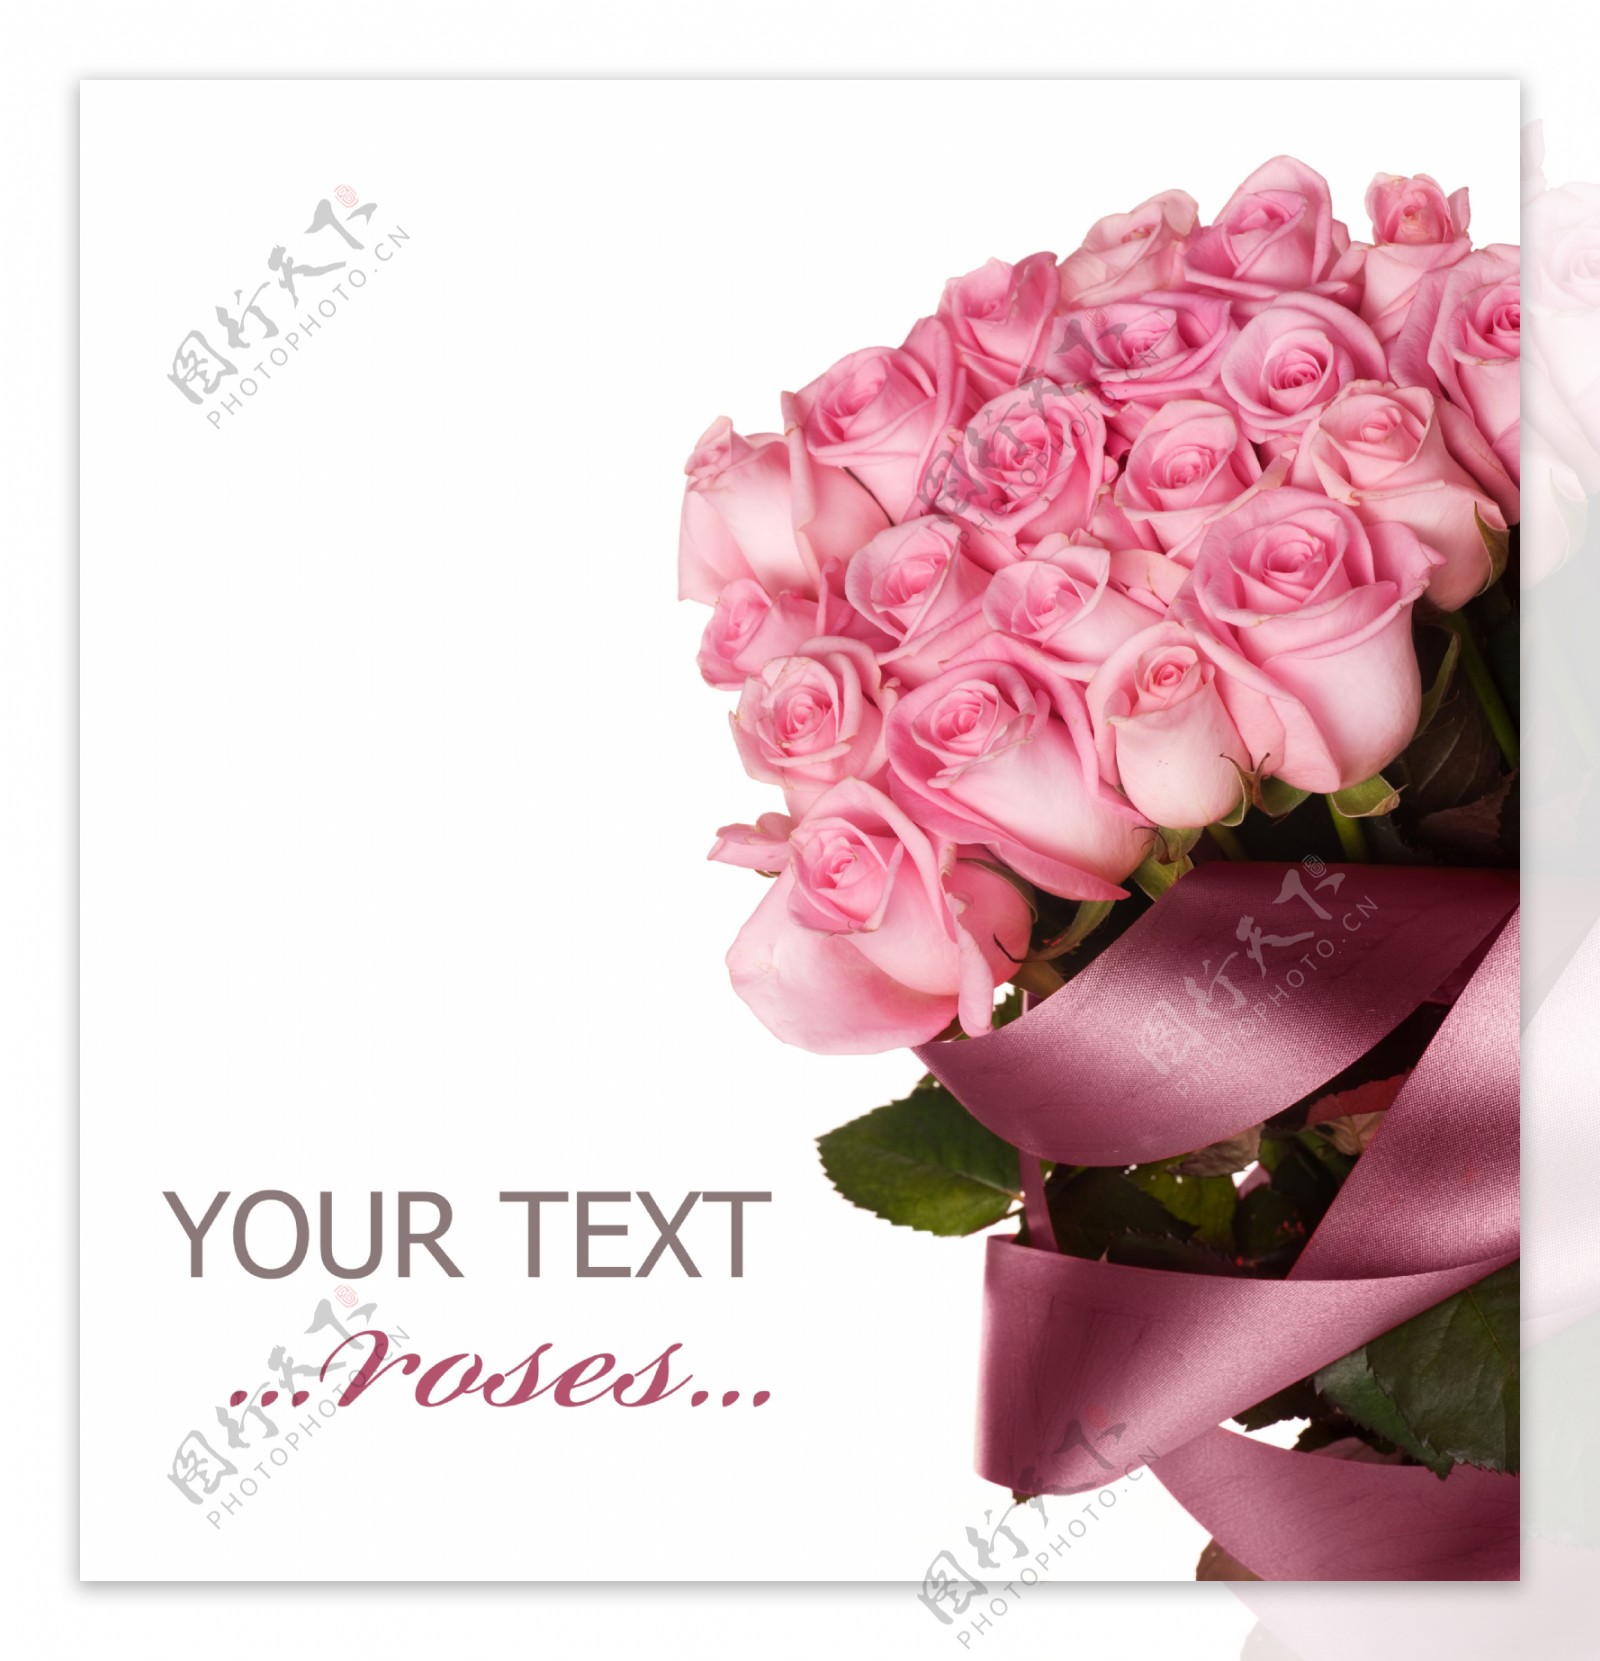 唯美粉色玫瑰花束图片